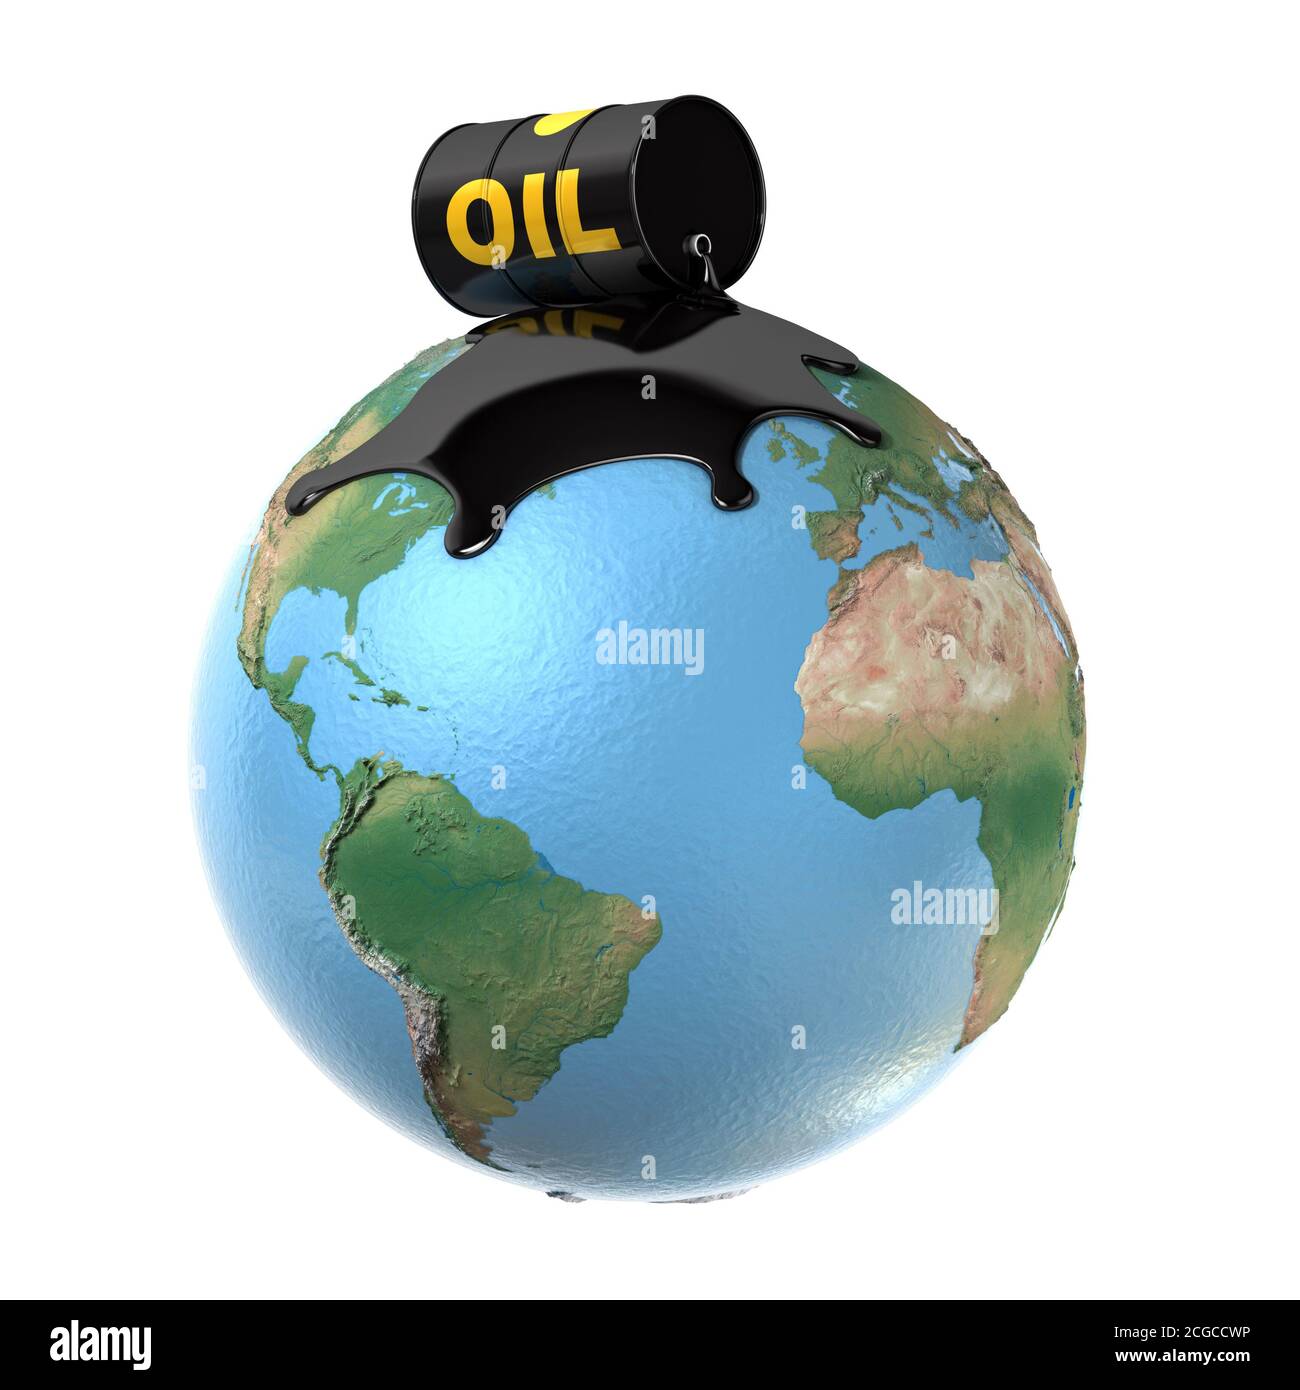 oil spill over planet earth 3d illustration Stock Photo